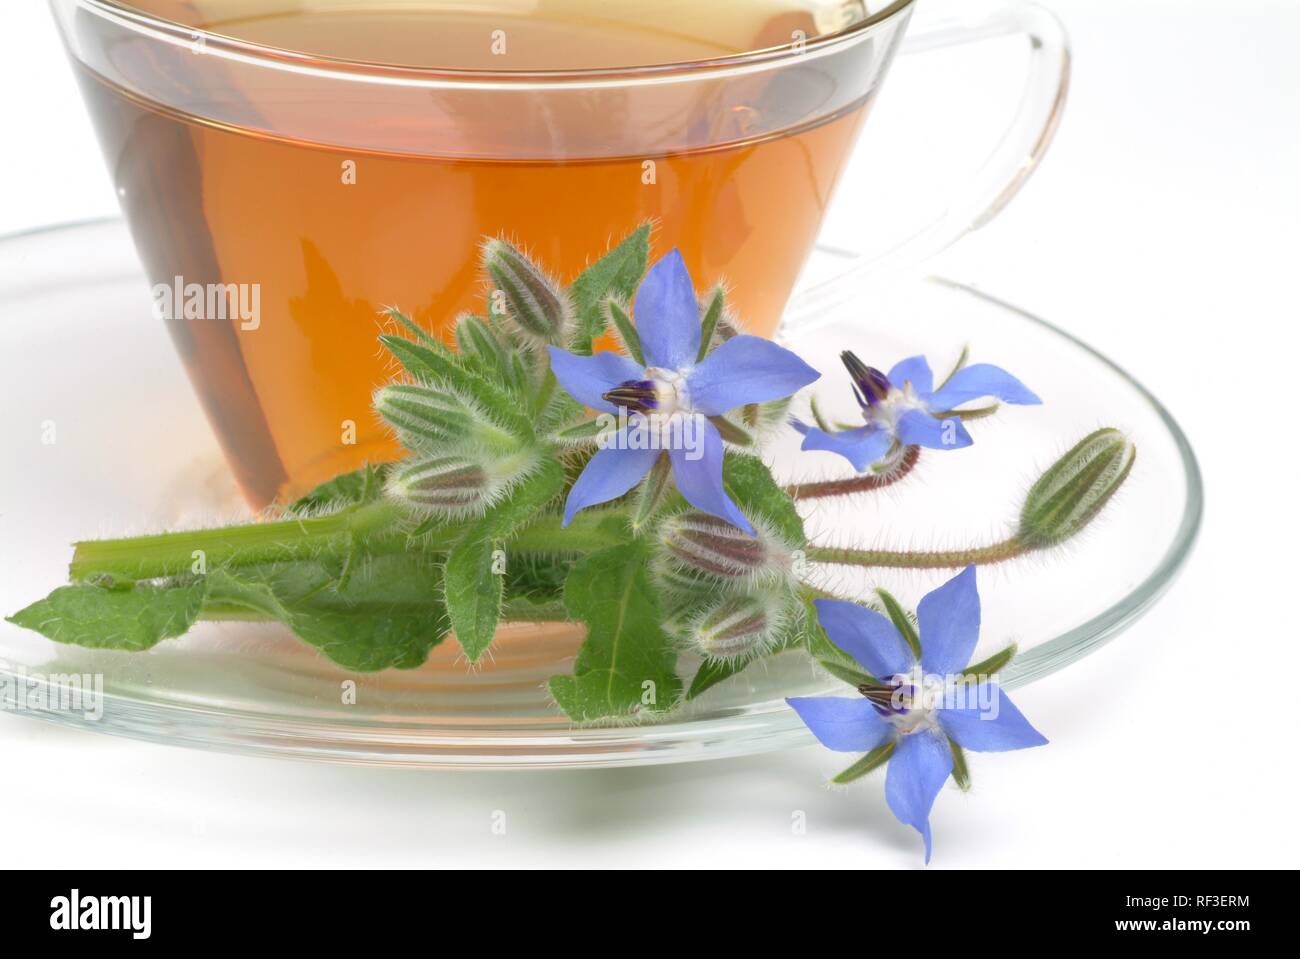 La trientale boréale ou bourrache (Borago officinalis) thé médicinal Banque D'Images